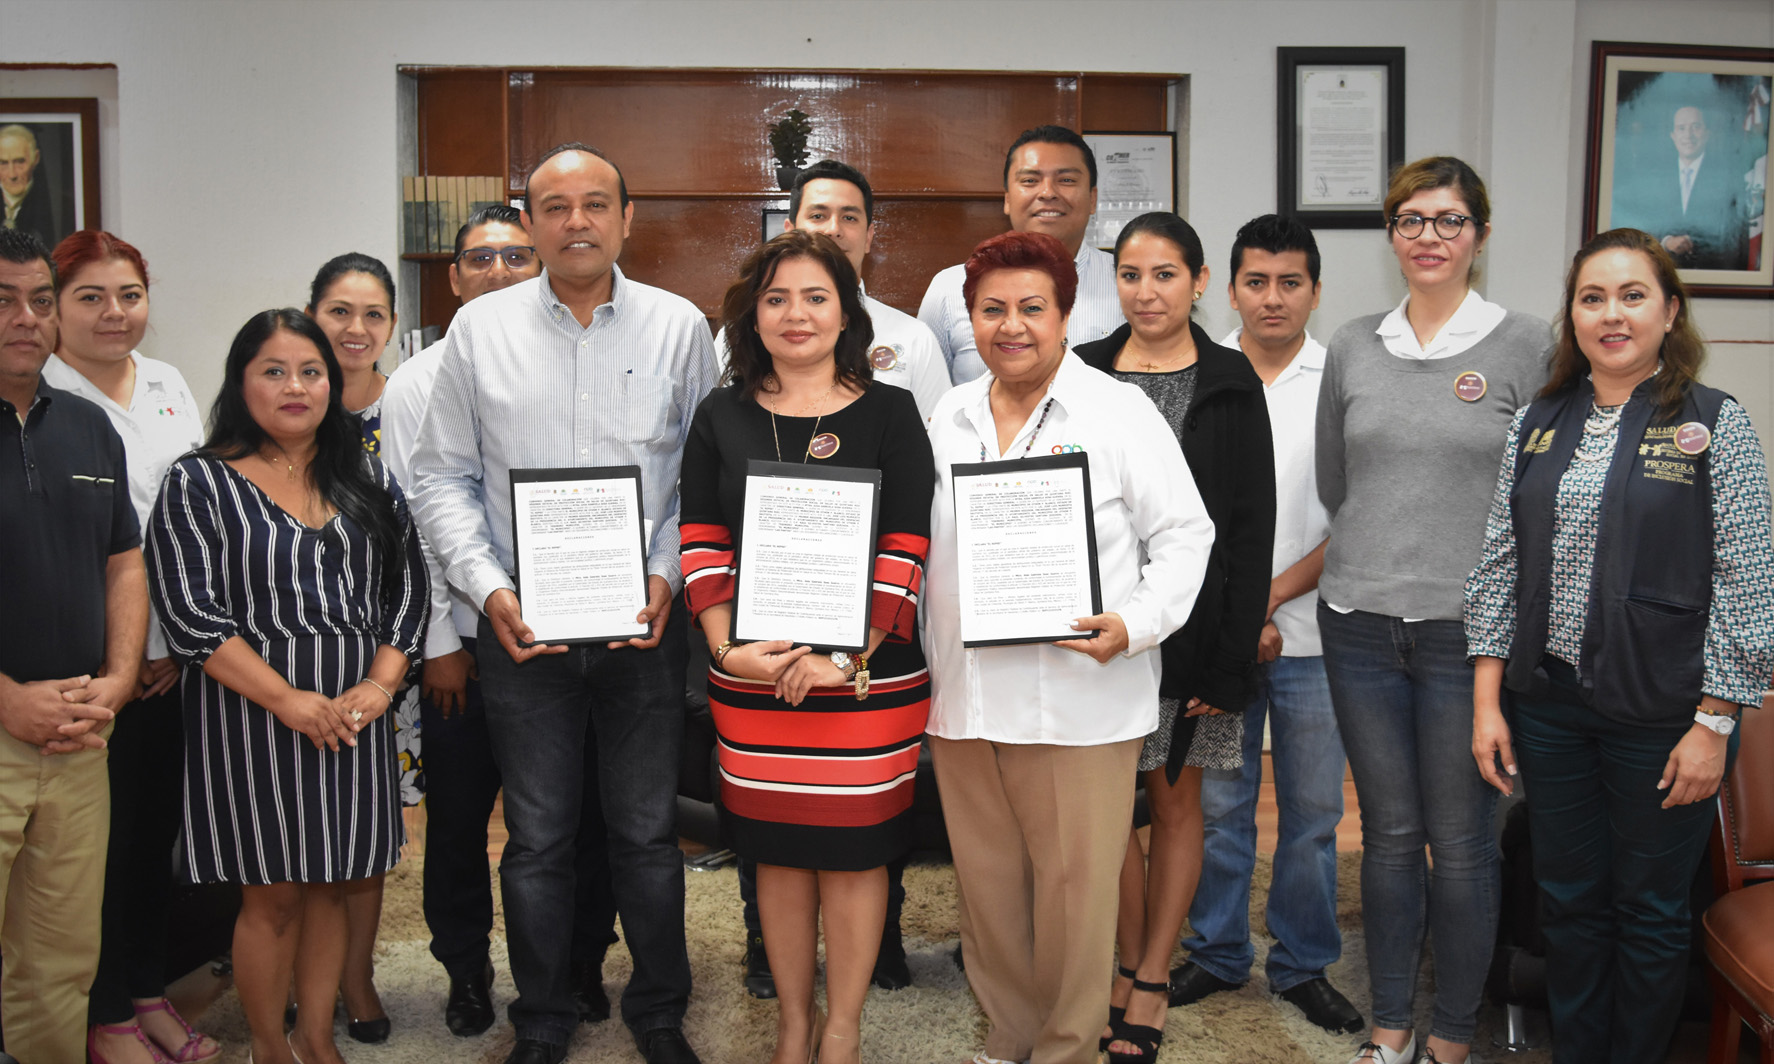 Continúa el Seguro Popular acercando cobertura de salud a municipios de Quintana Roo e instala módulos digitales de afiliación y orientación